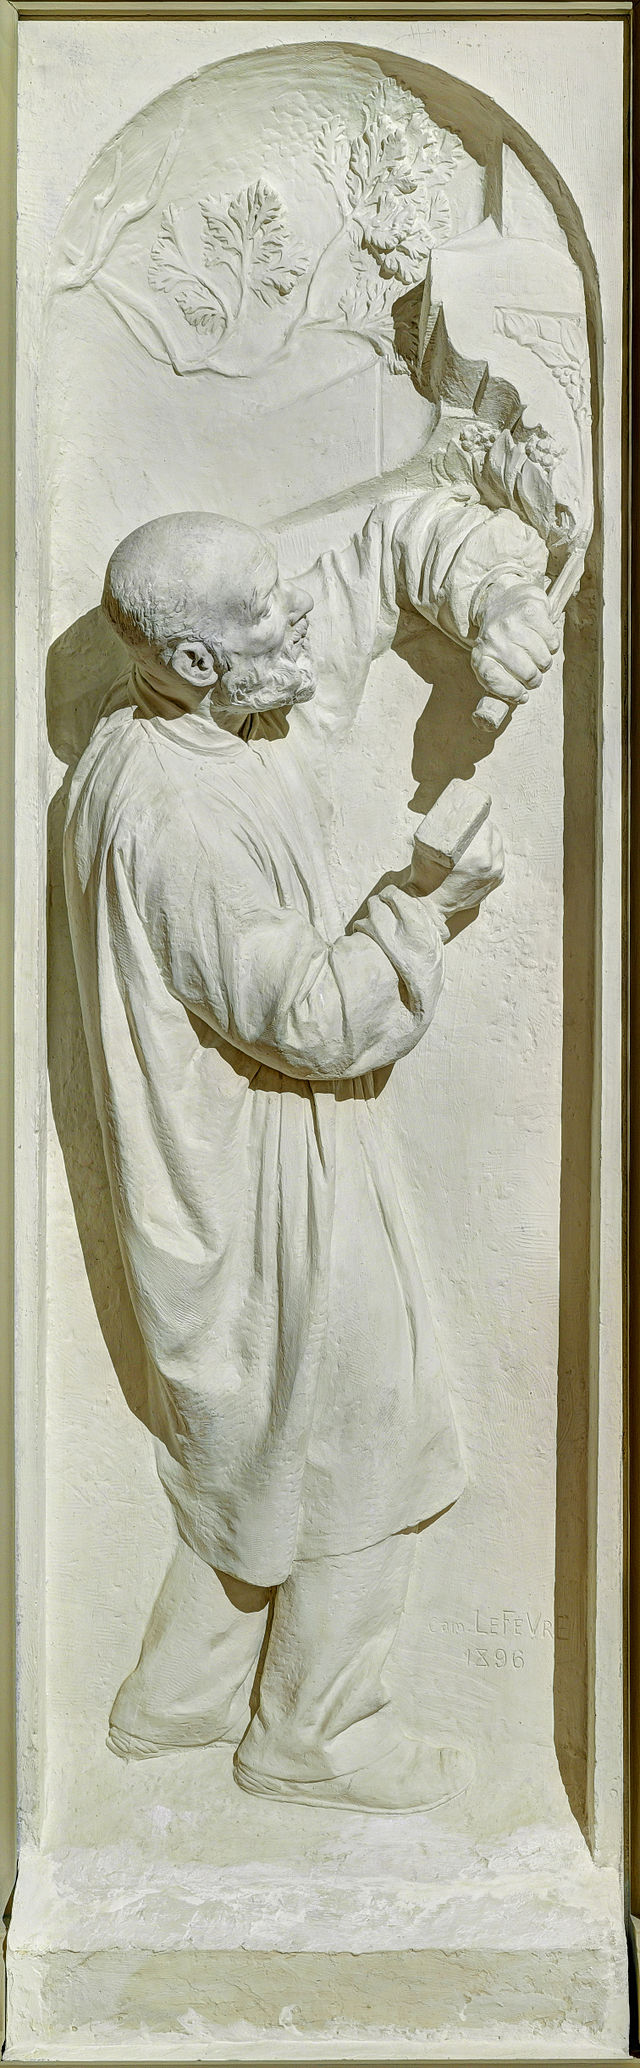 Камиль Лефевр. «Скульптор» (1896).